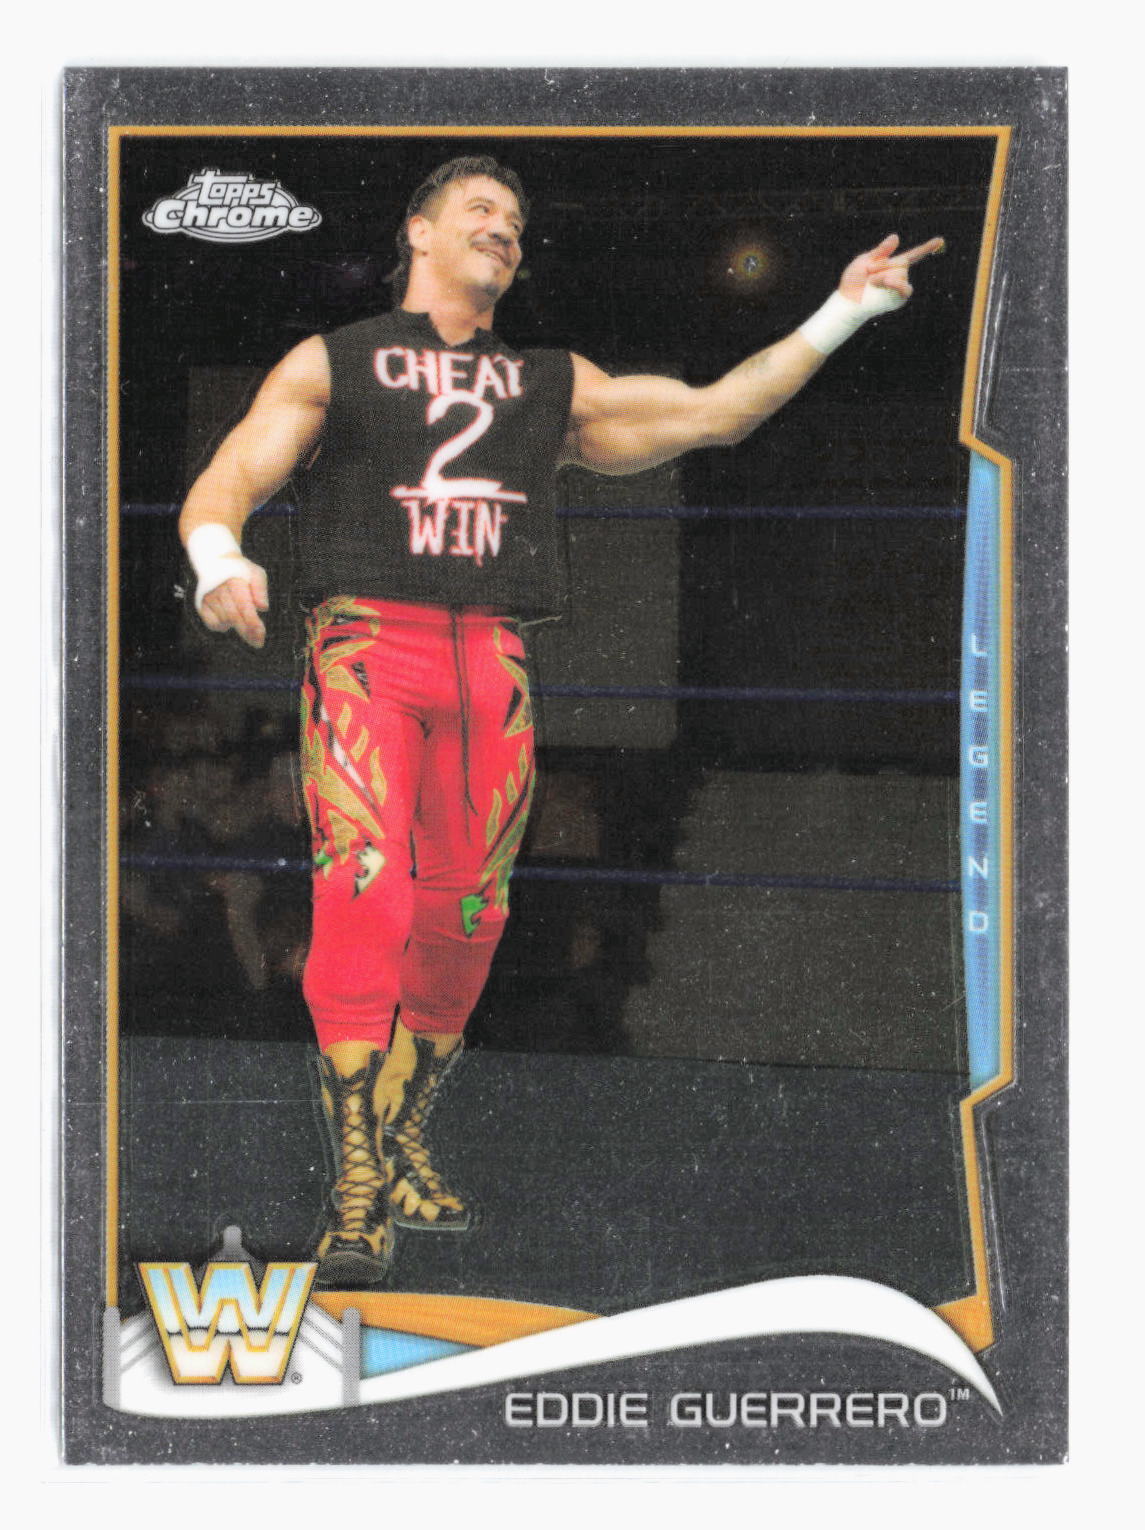 2014 Topps Chrome WWE Eddie Guerrero 100 Pro Wrestling Card